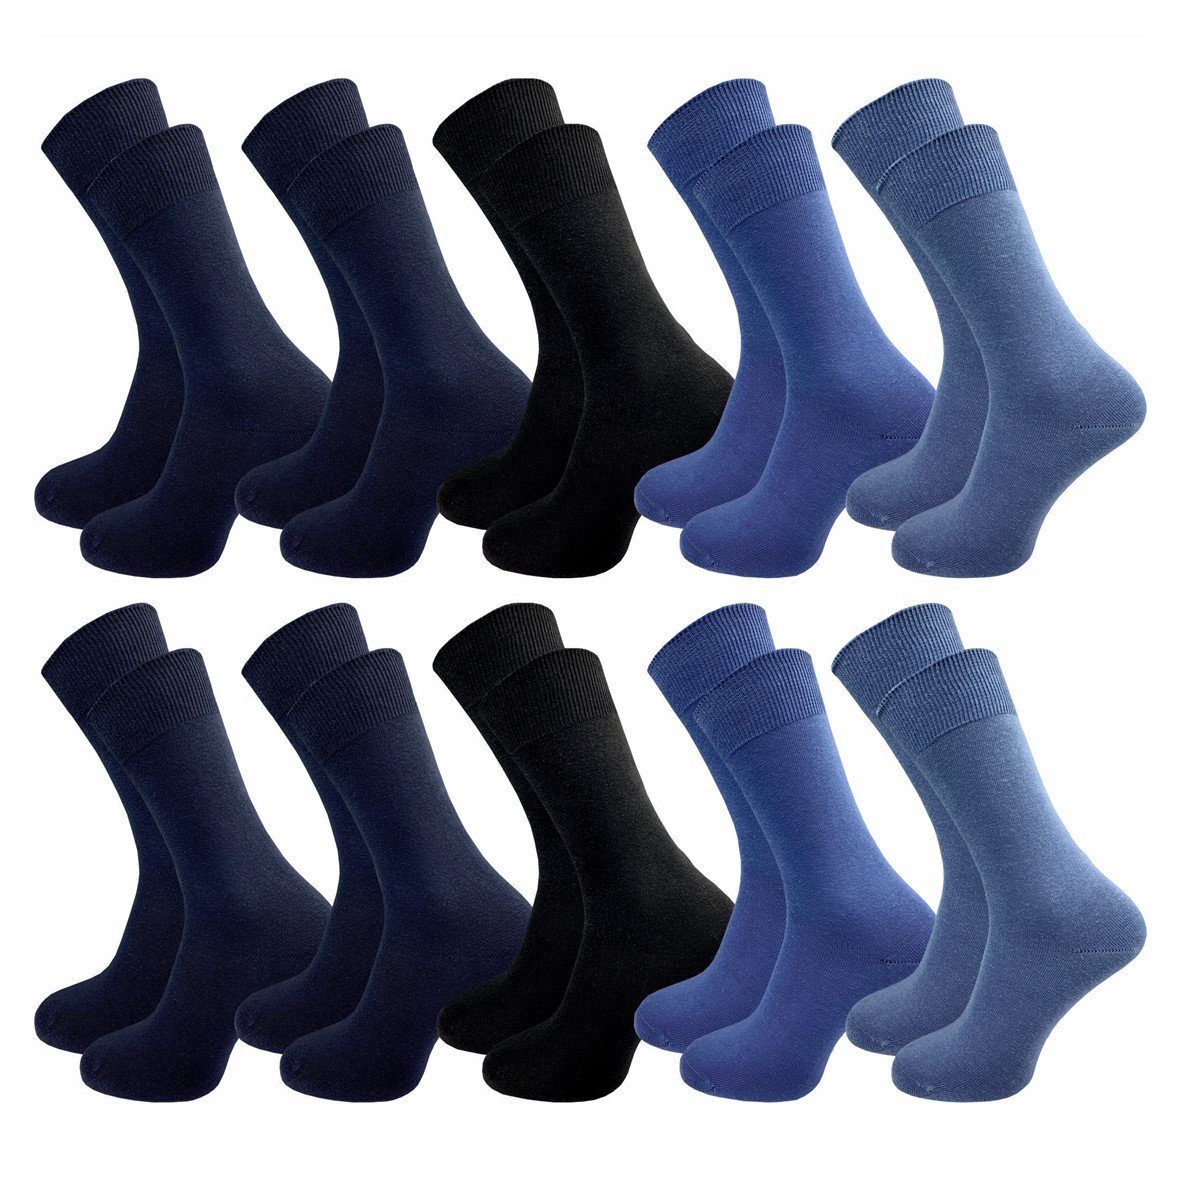 GAWILO Basicsocken aus 100% Baumwolle für Herren in 3 Farbkombinationen ohne Gummidruck (10 Paar) natur-, blau- & dunkle Töne - ideale Ergänzung Ihres Socken Sortiments blaue Töne